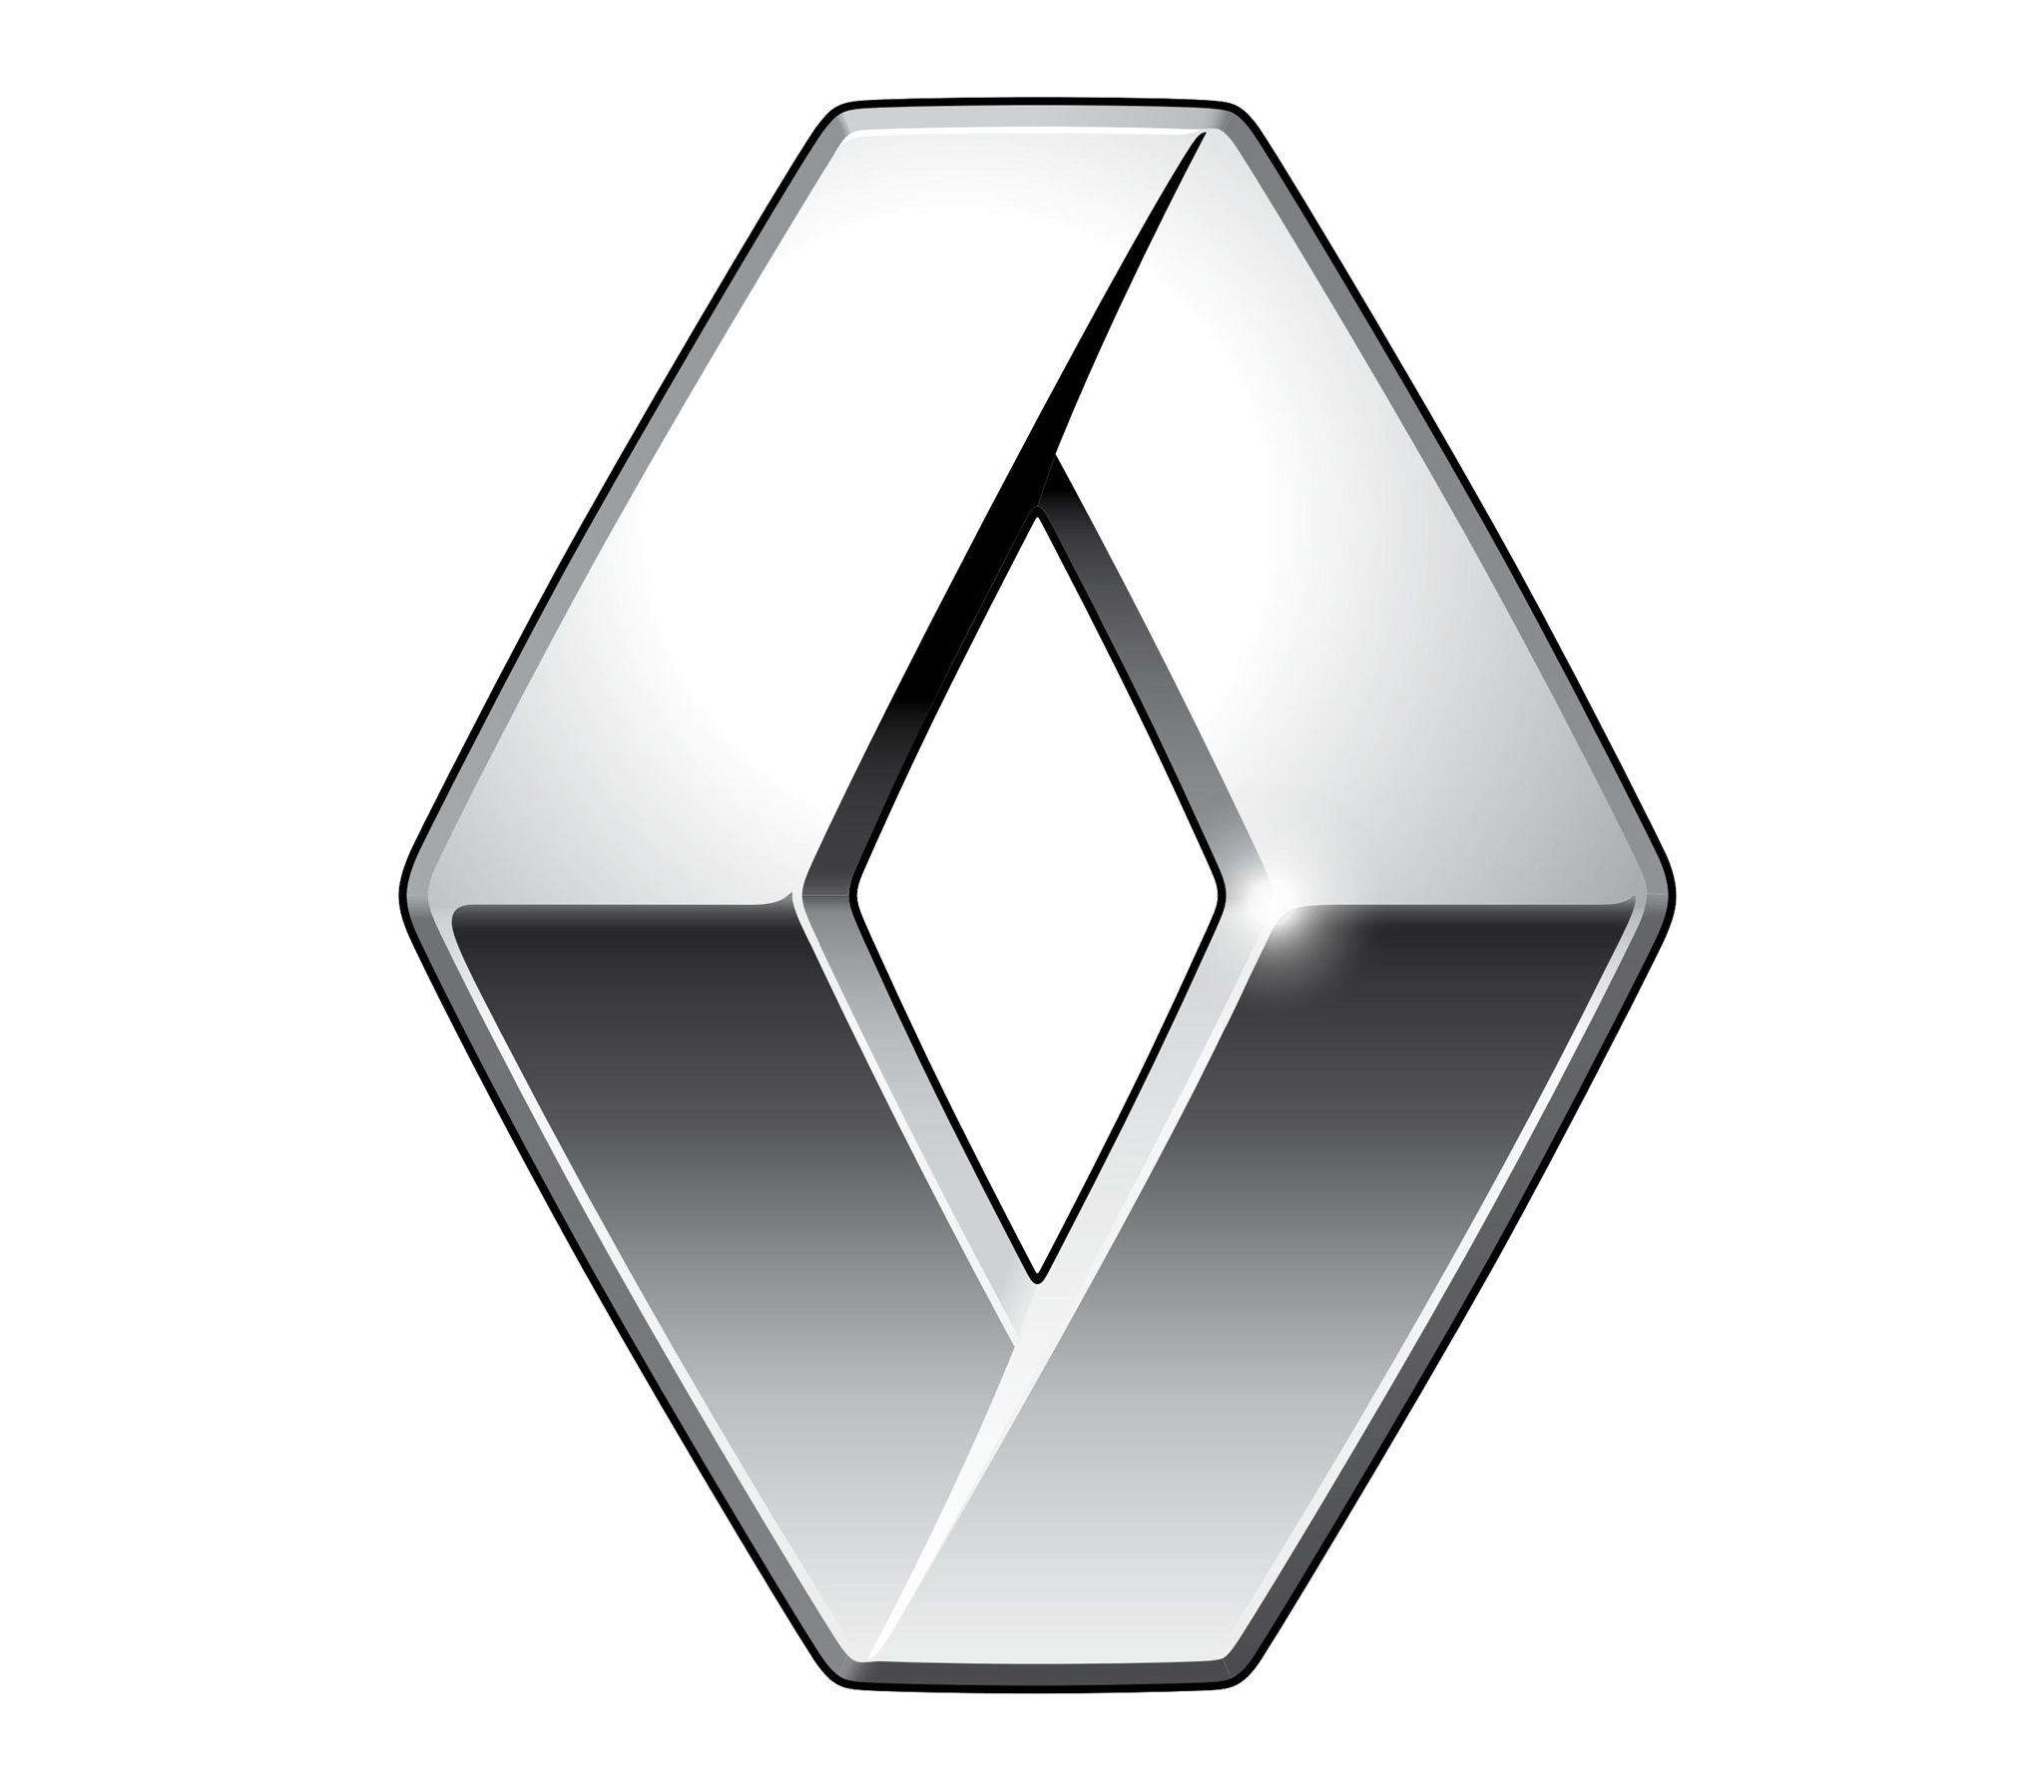 Renault Twingo autoliising | Sixt Leasing